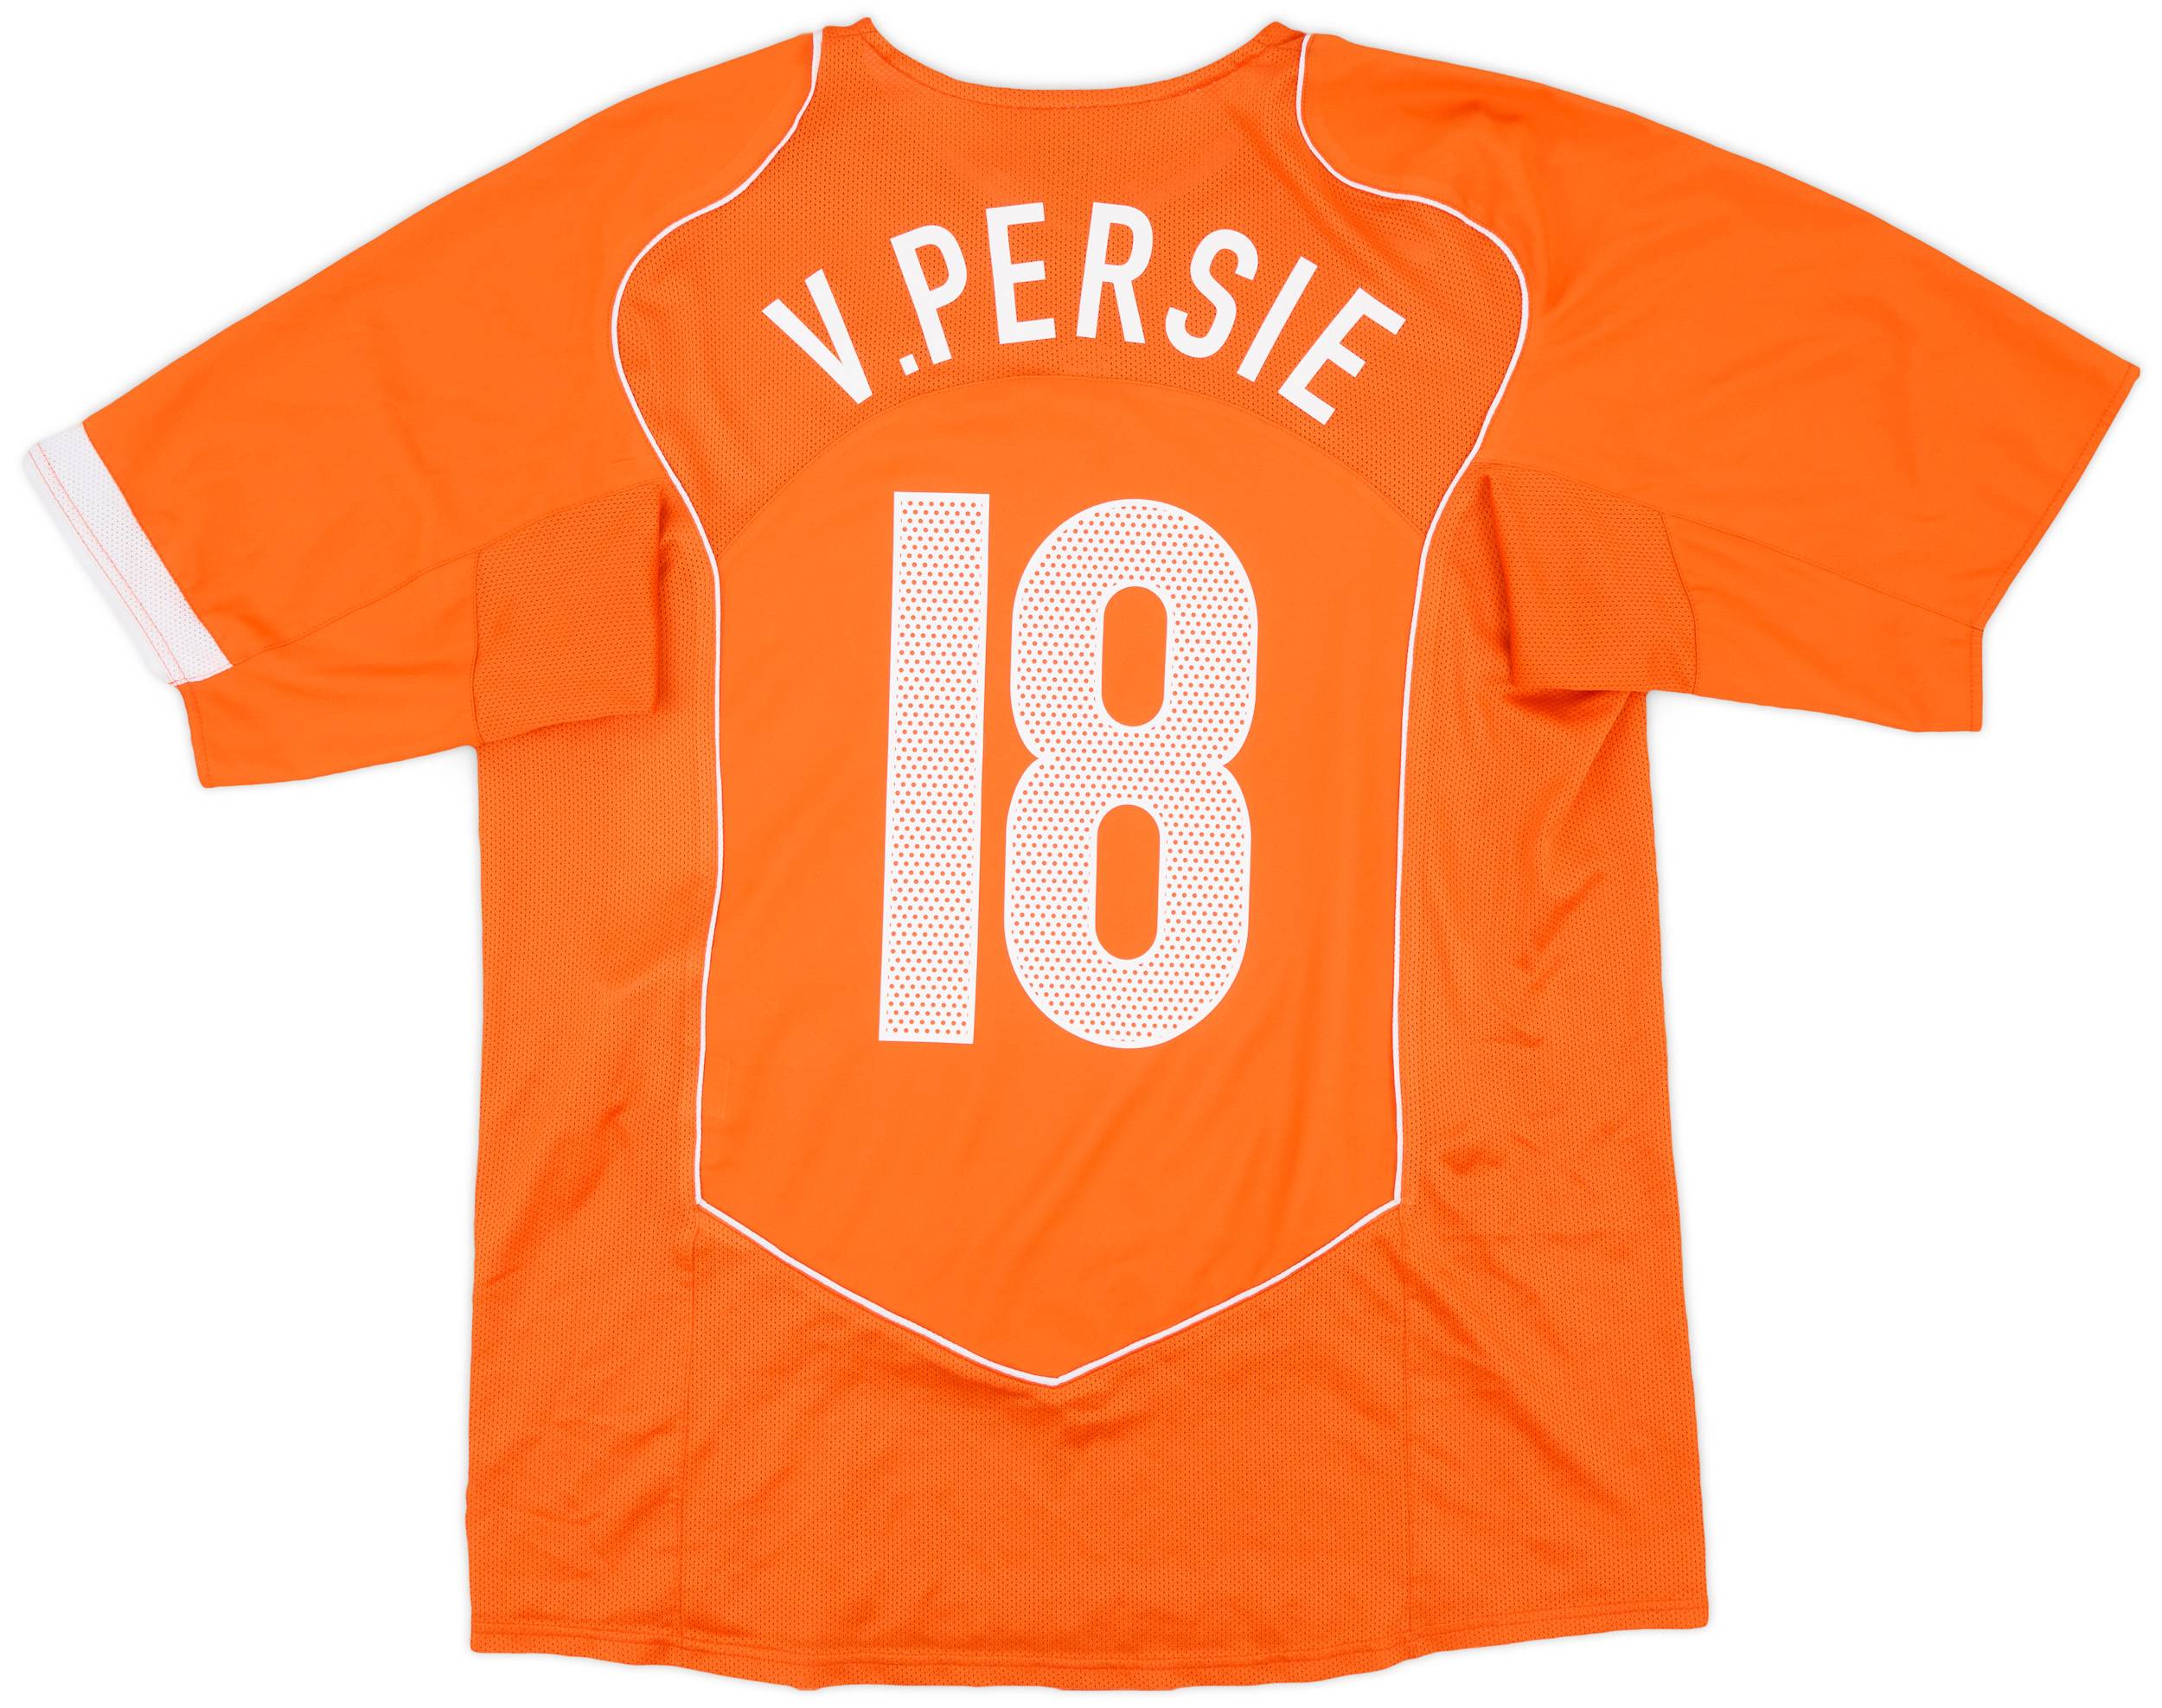 2004-06 Netherlands Home Shirt v.Persie #18 - 8/10 - (L)